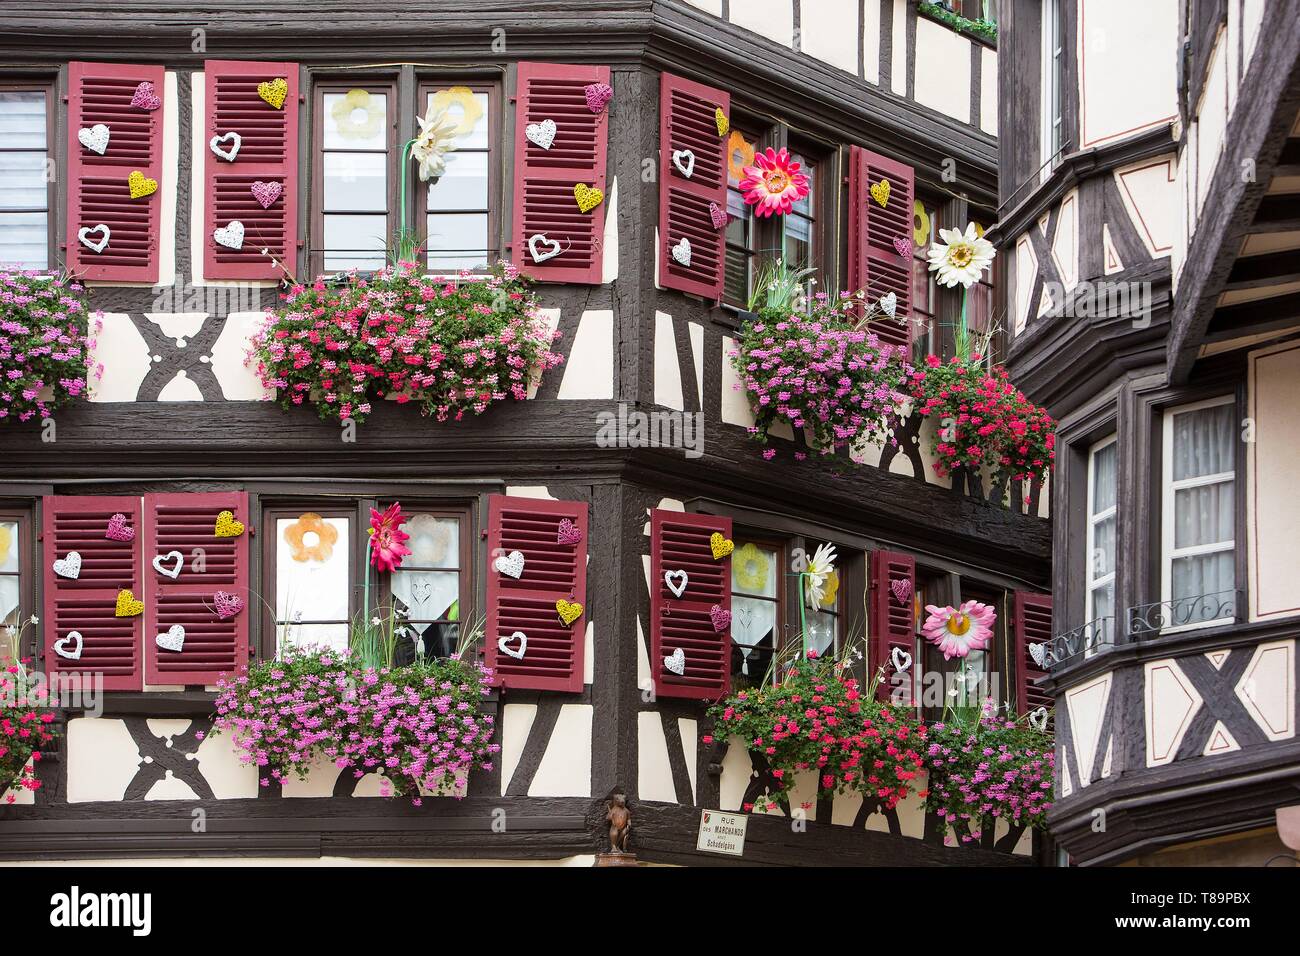 Francia, Haut Rhin, Route des Vins d'Alsace, Colmar, facciata di una casa tradizionale che ospita il negozio Aux Vieux Pignons situato in Marchands Street Foto Stock